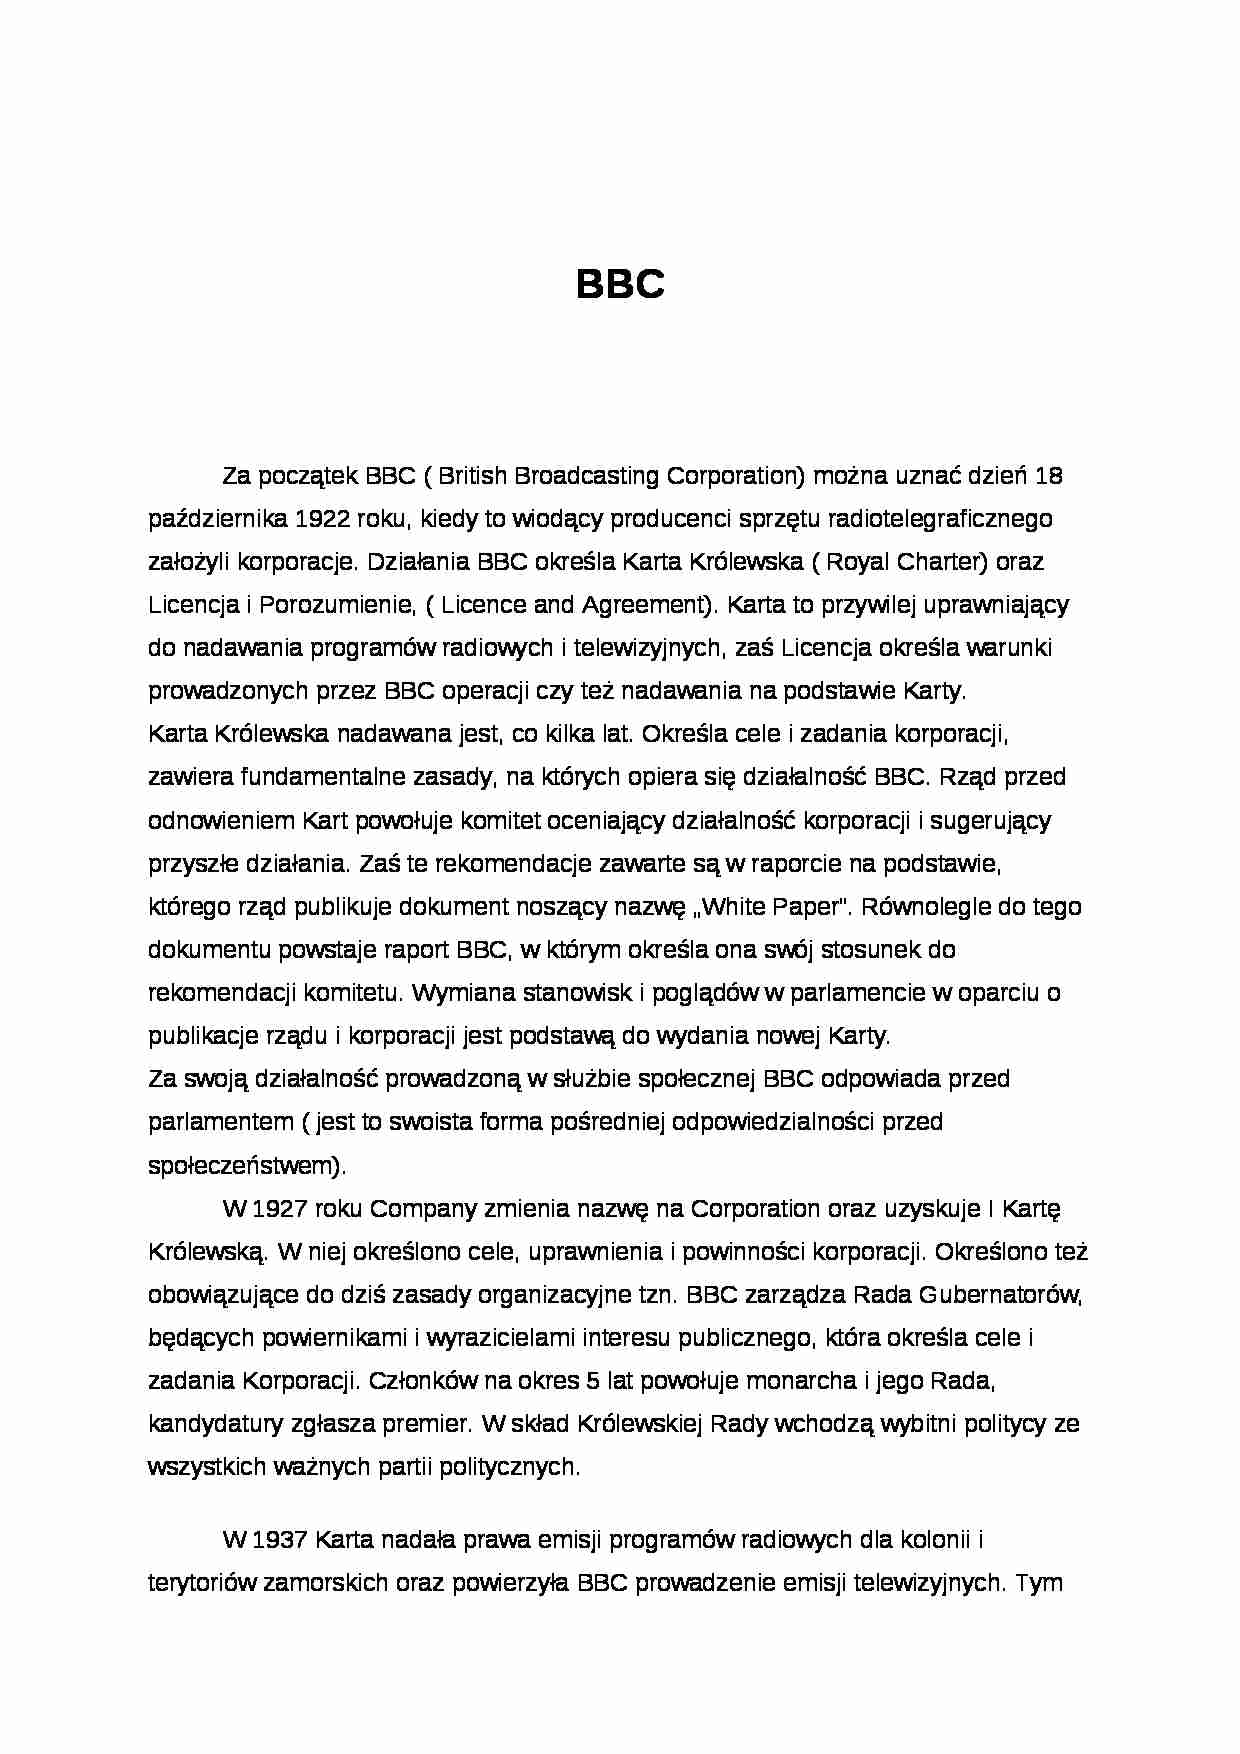 BBC - historia telewizji - strona 1